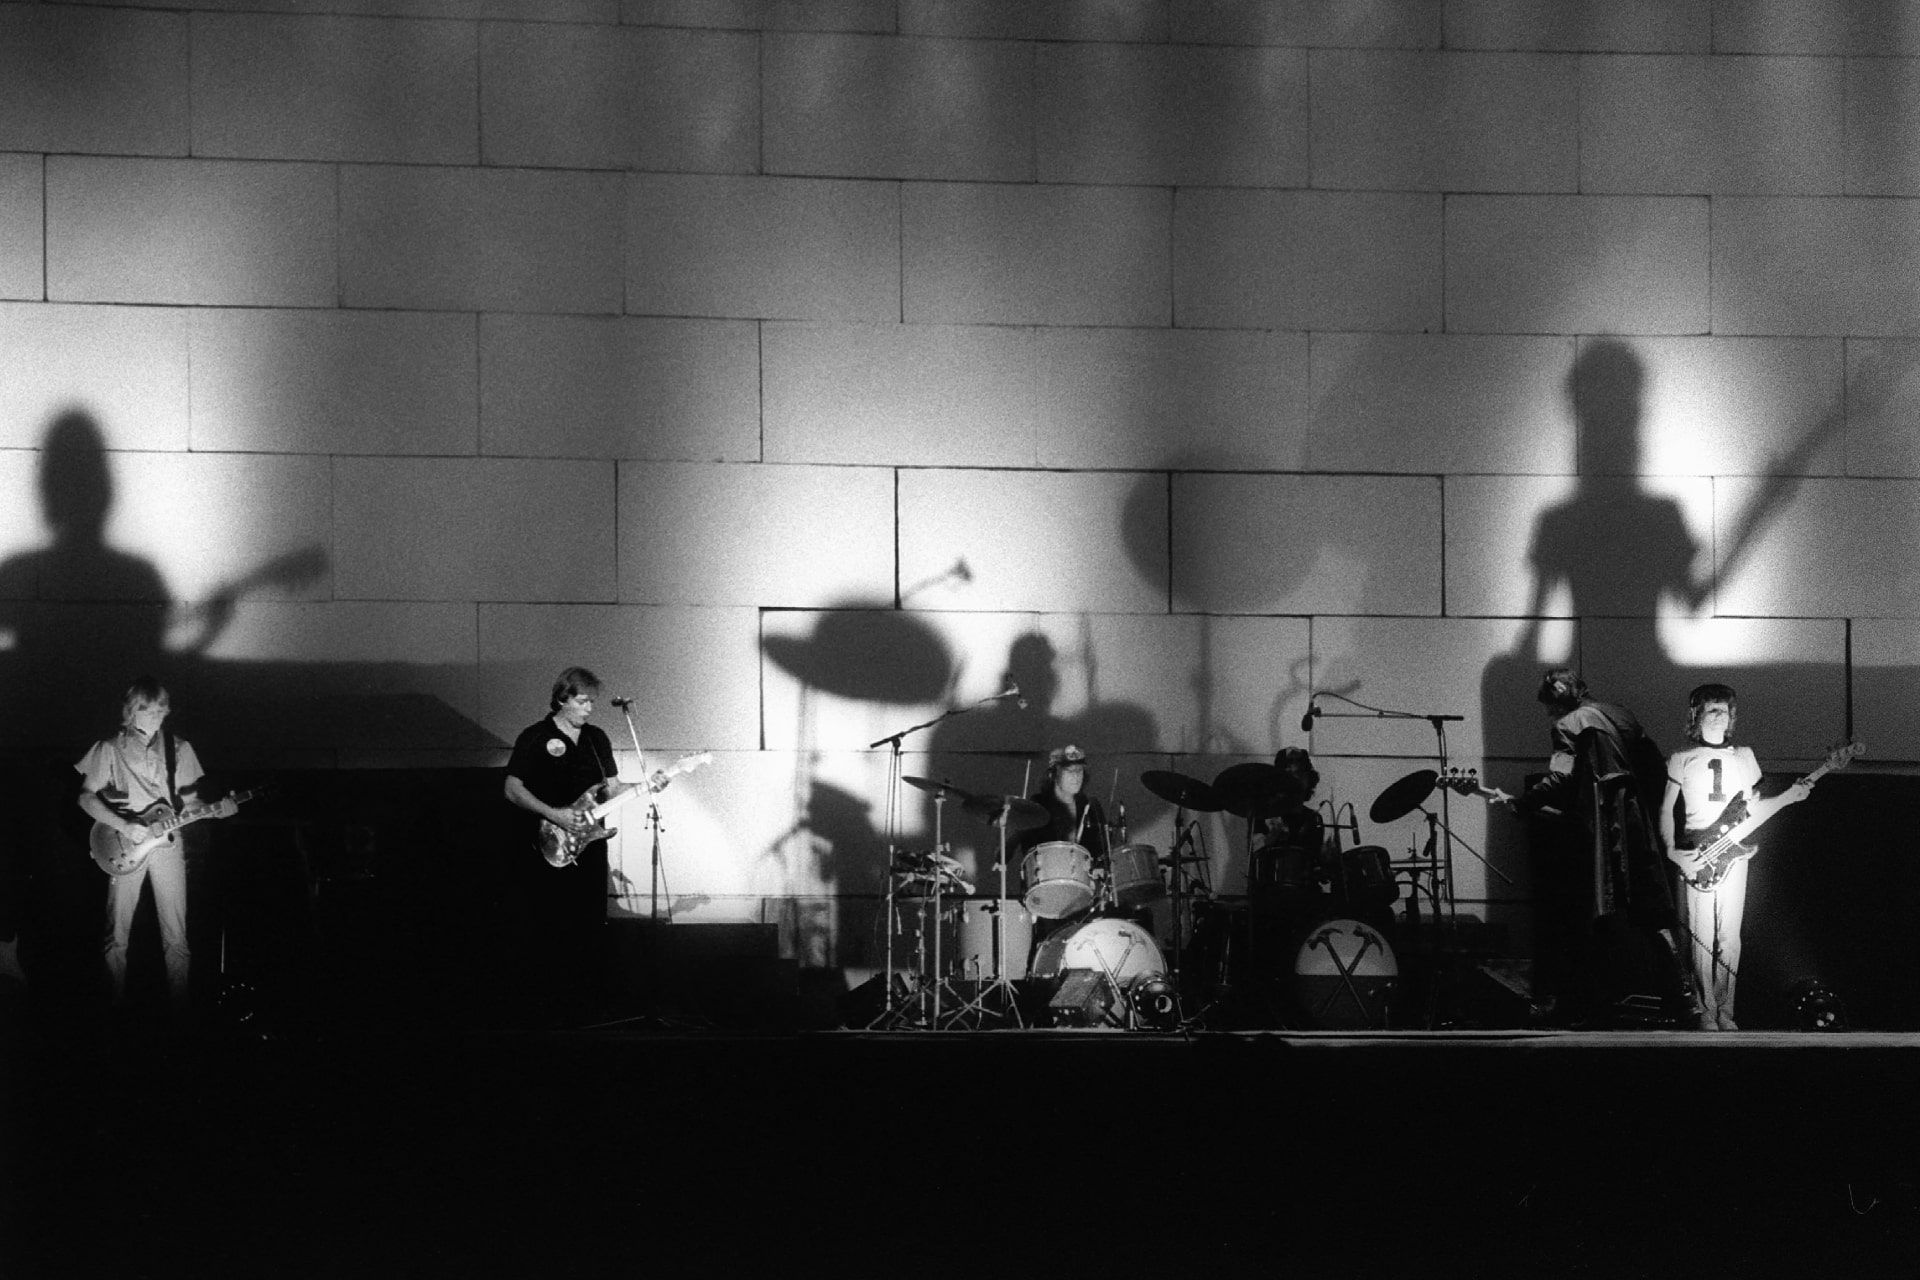 تور The Wall پینک فلوید در ۶ اوت ۱۹۸۰ در ارلز کورت در لندن